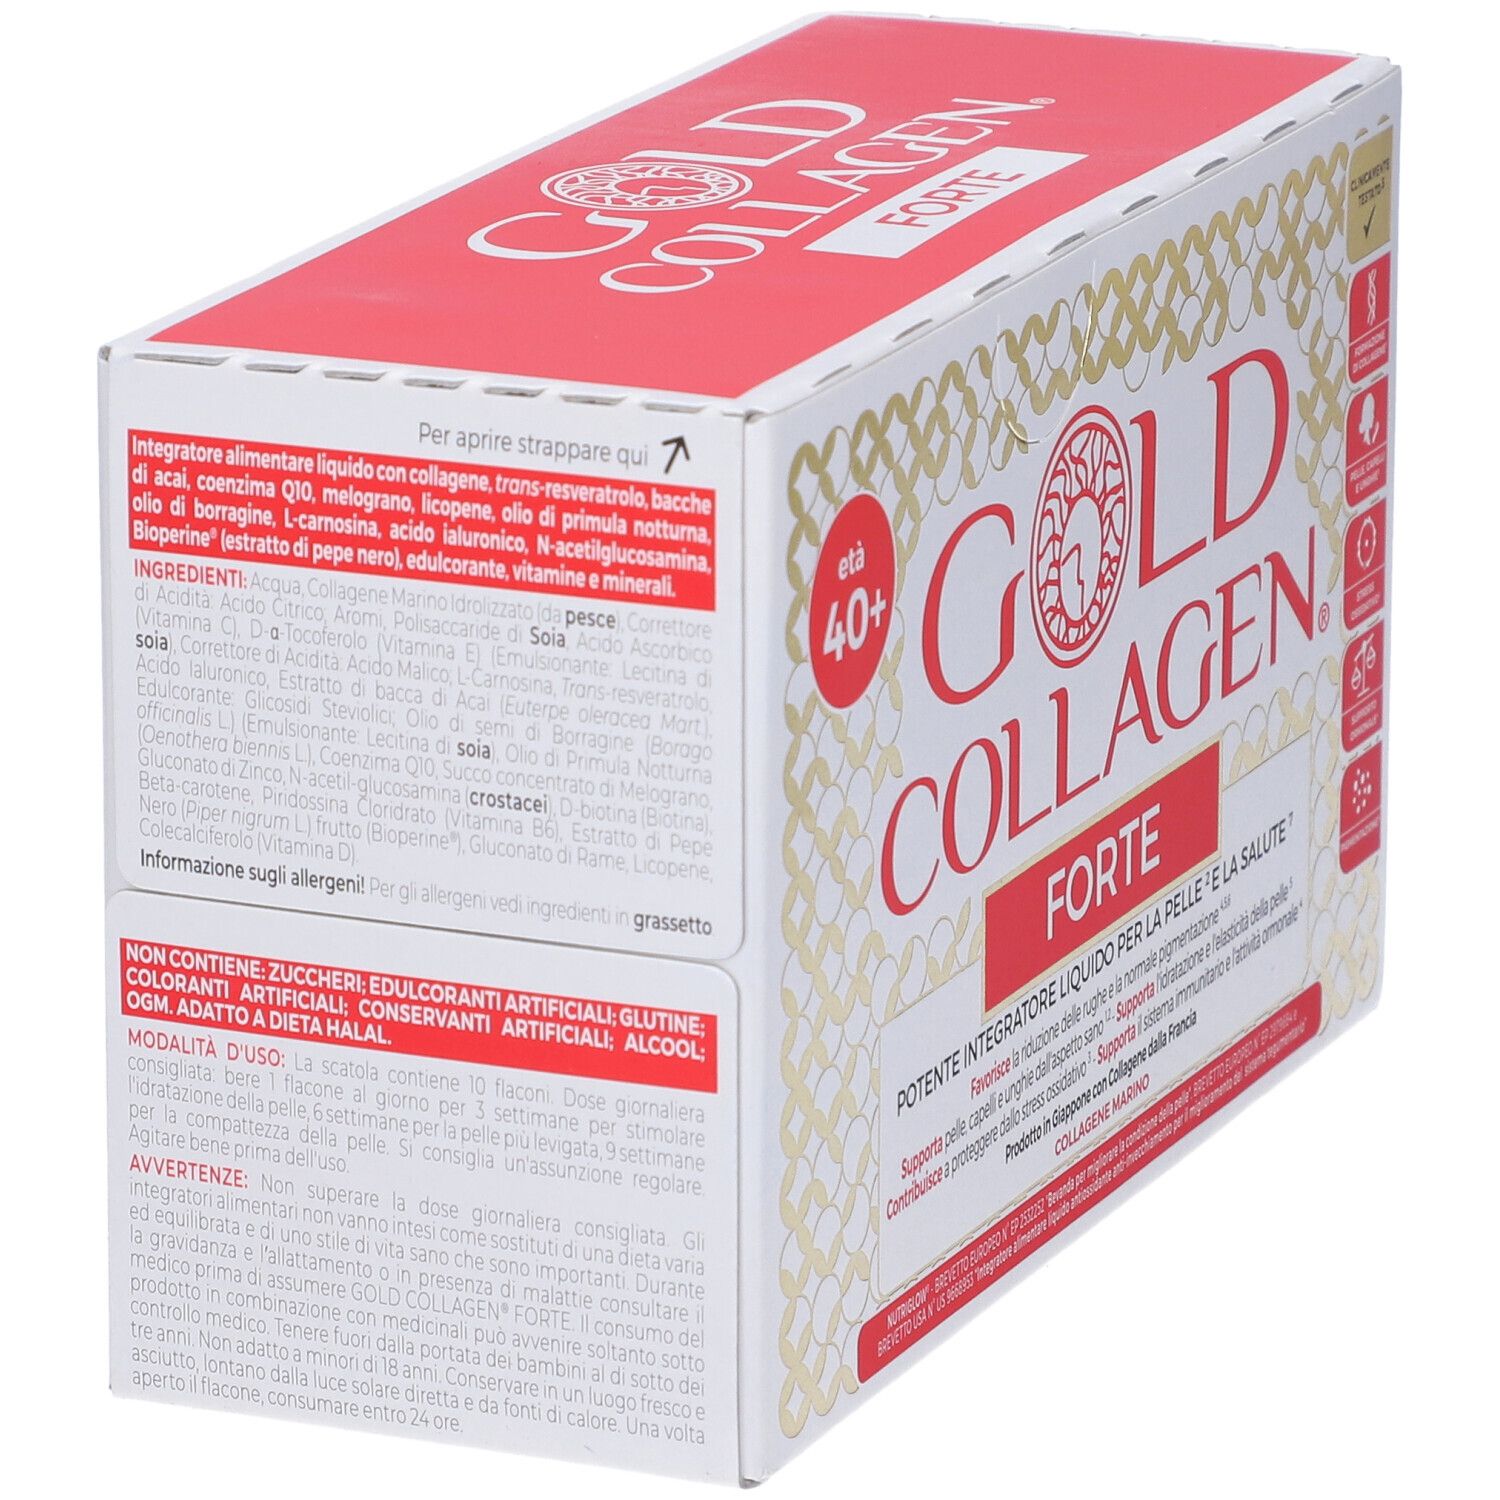 Gold® Collagen Forte 50 ml